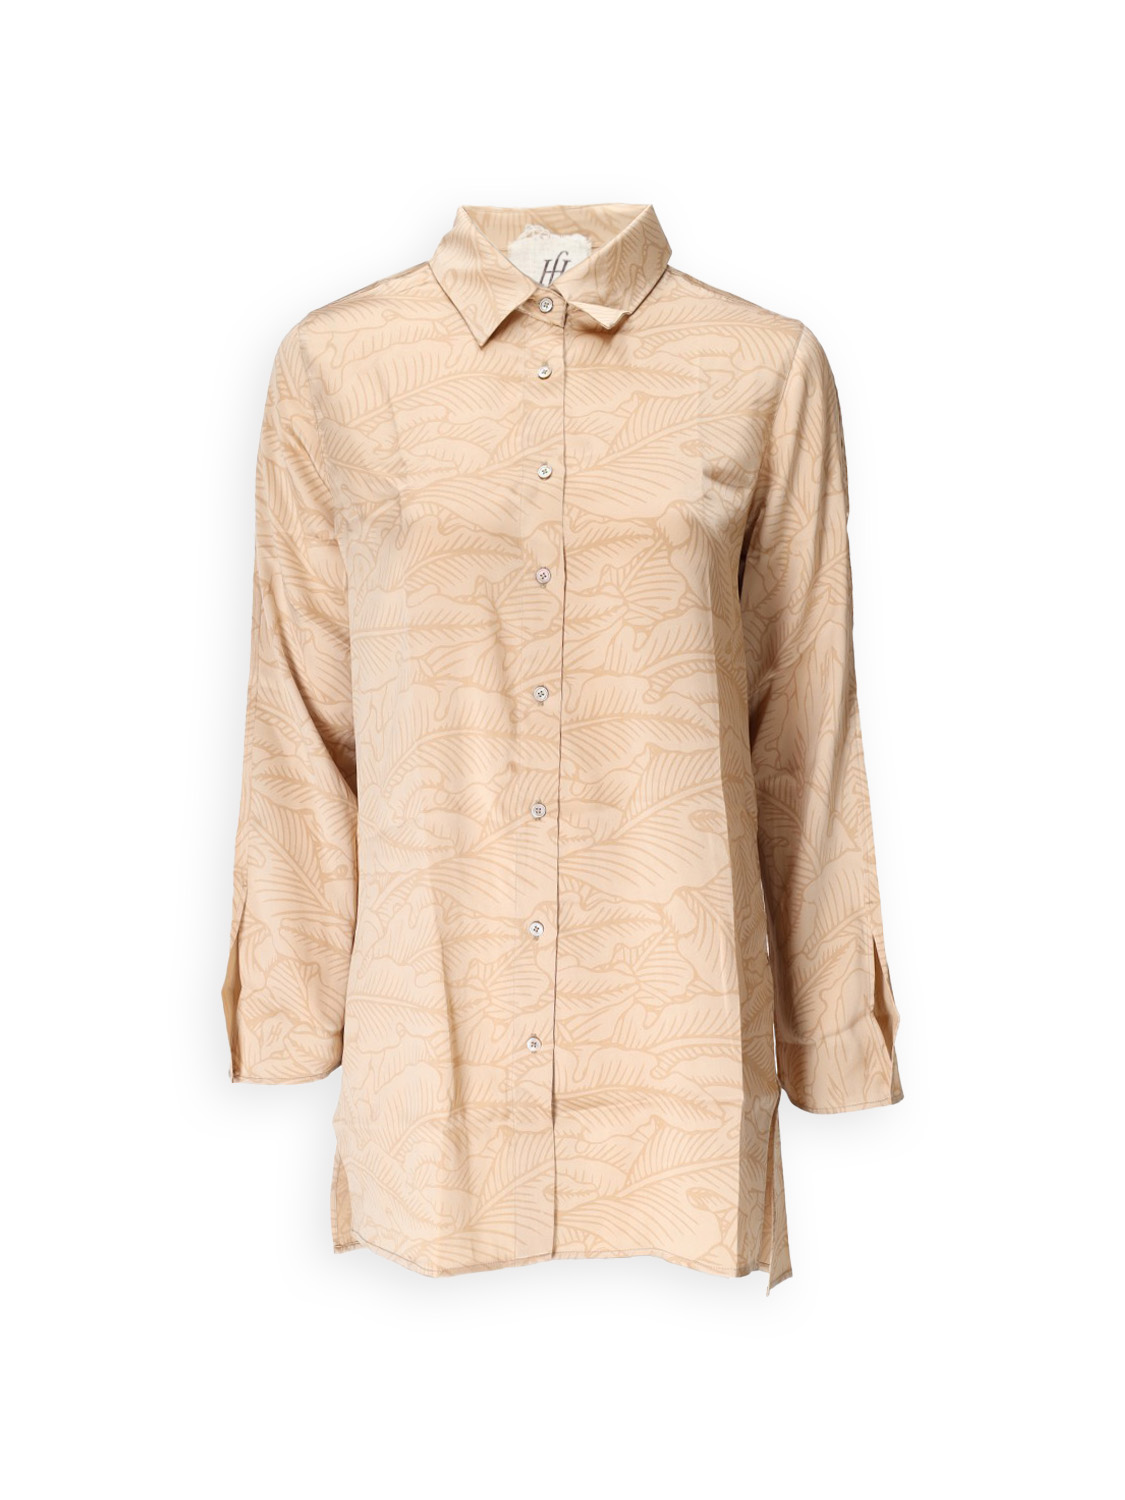 Dura Ingadi – silk blouse with floral pattern 